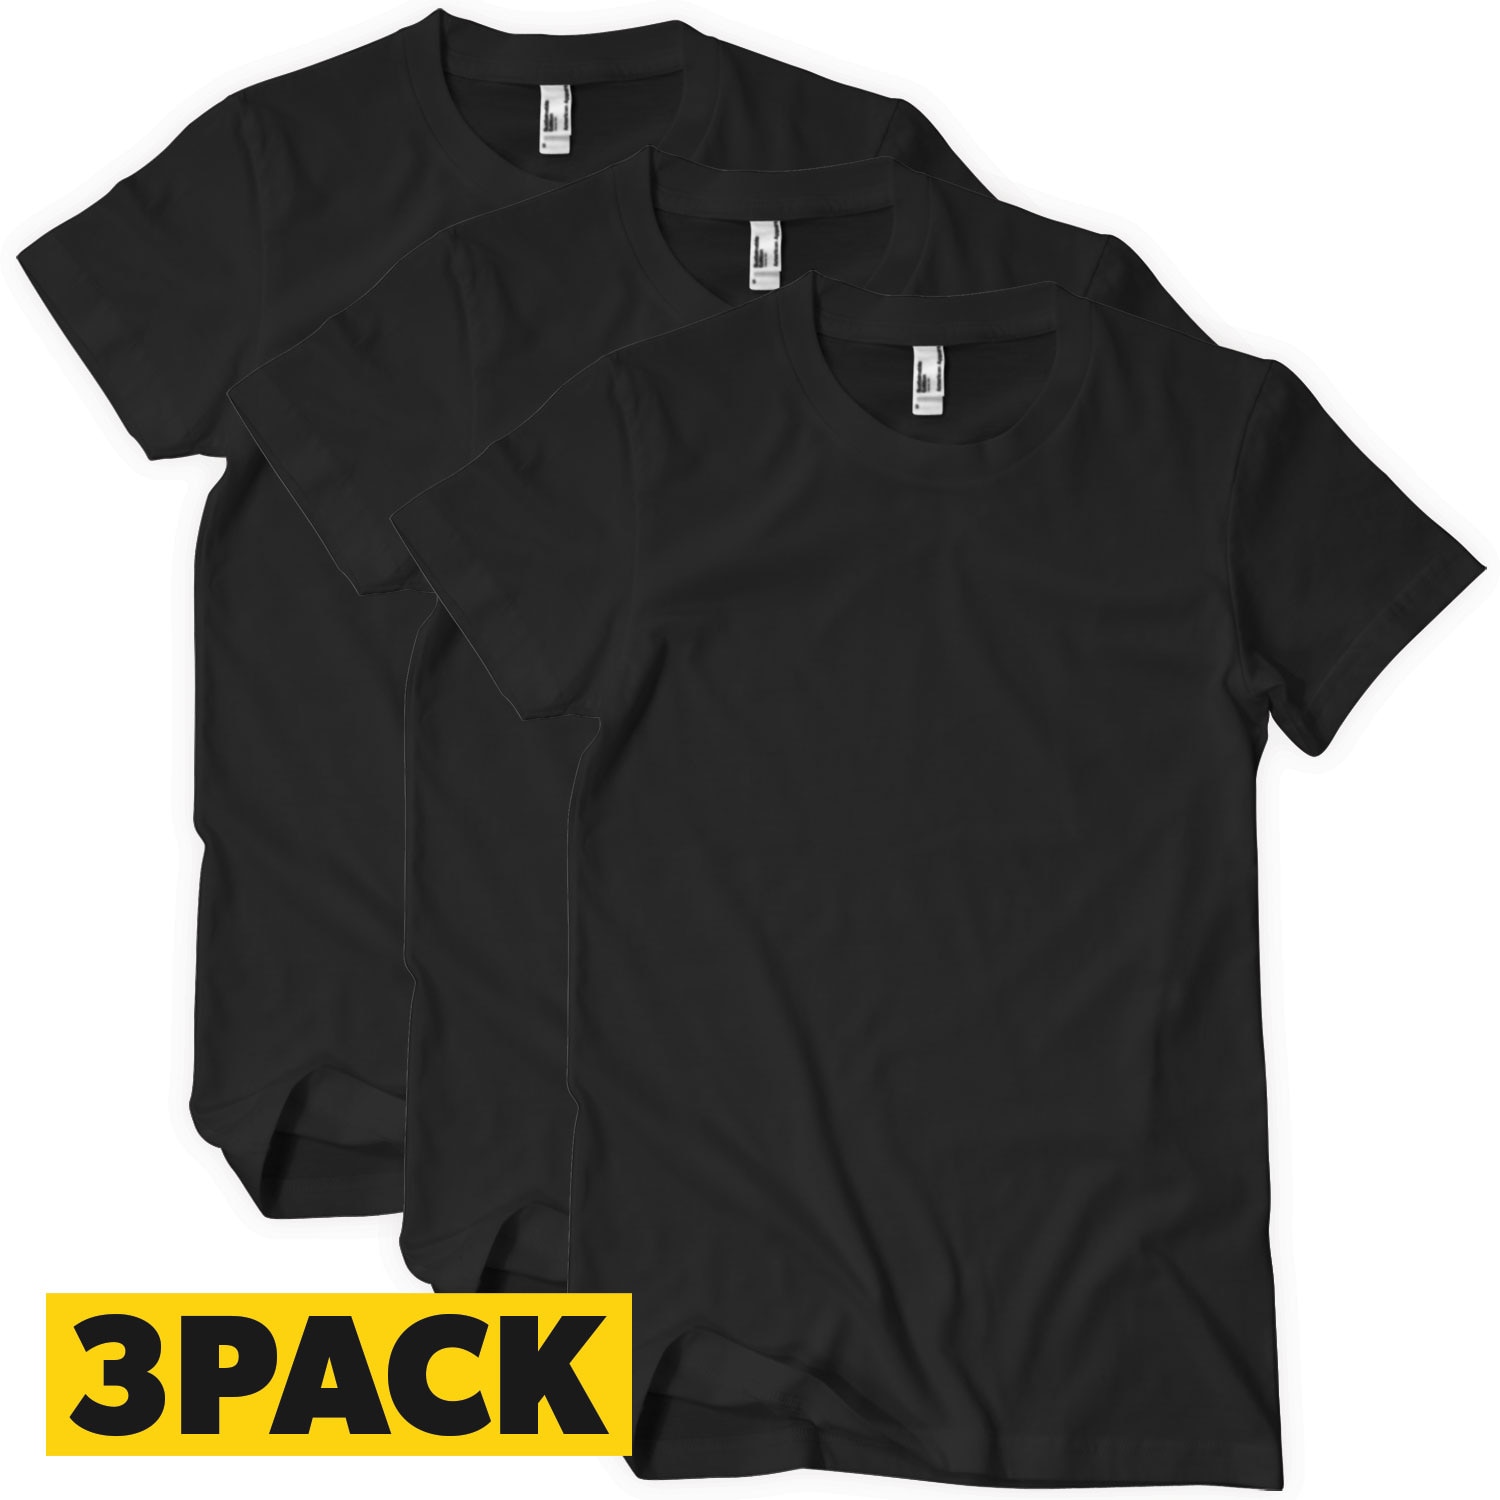 T-Shirts Big Pack Black - 3 pack